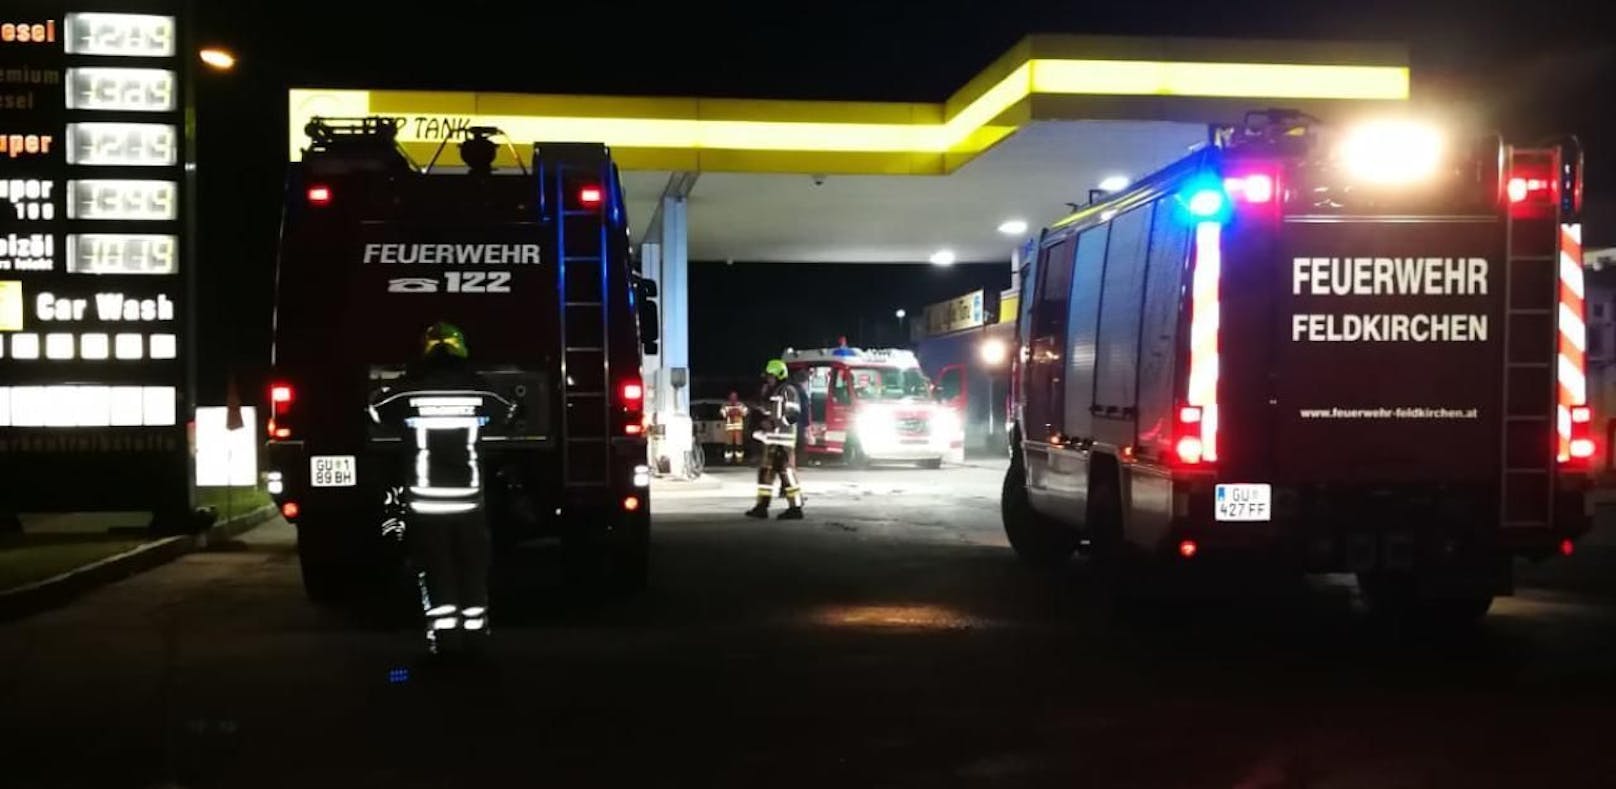 Nur einen Tag nach dem Kauf brannte ein Auto an der Tankstelle. Bild: Freiwillige Feuerwehr Feldkirchen bei Graz